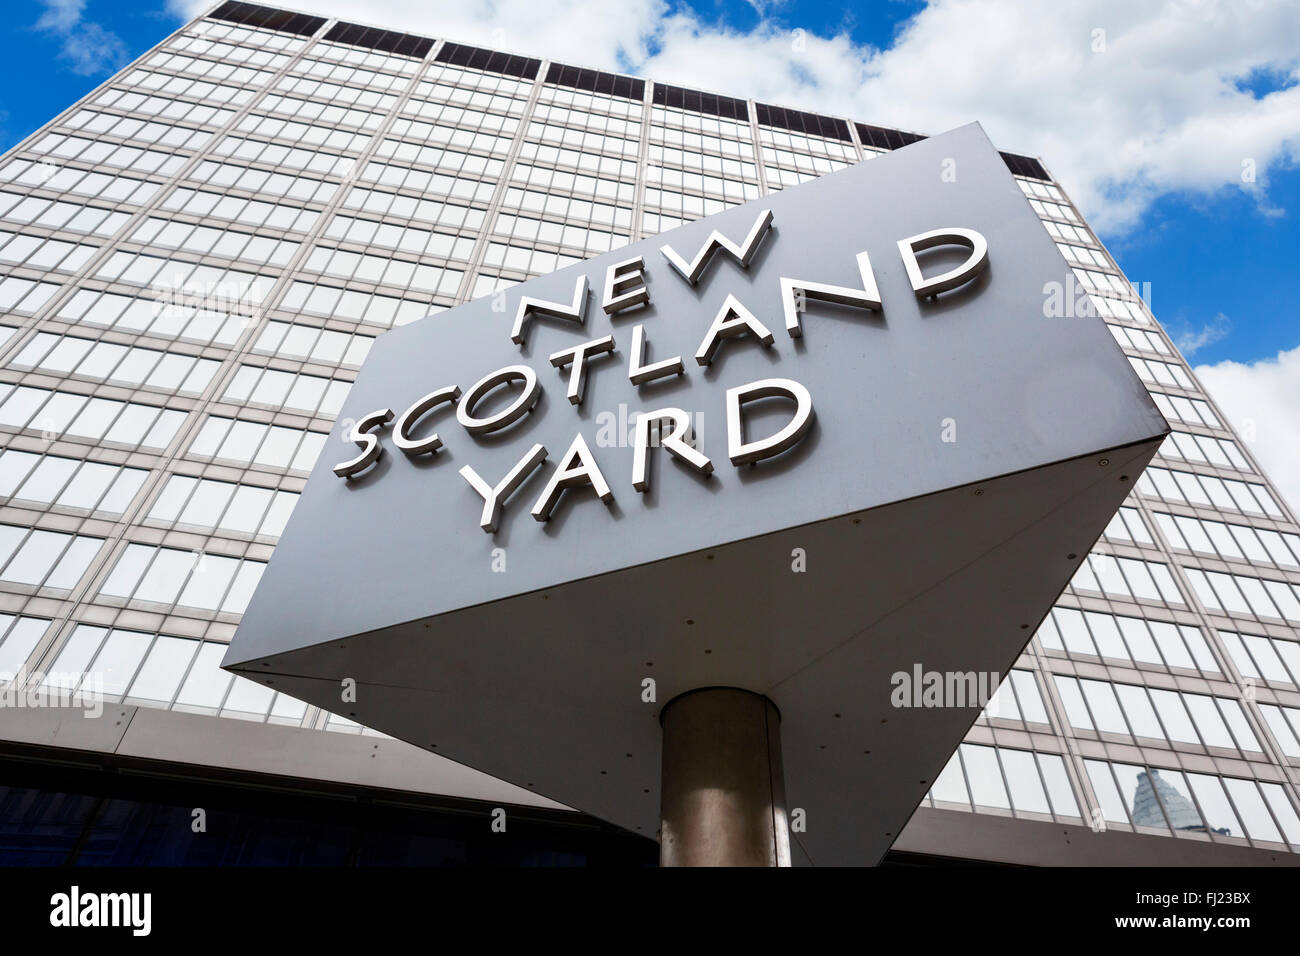 New Scotland Yard avant son déménagement en 2016. Inscrivez-vous à l'extérieur du siège de la Police métropolitaine, Broadway, Victoria, London, England, UK Banque D'Images